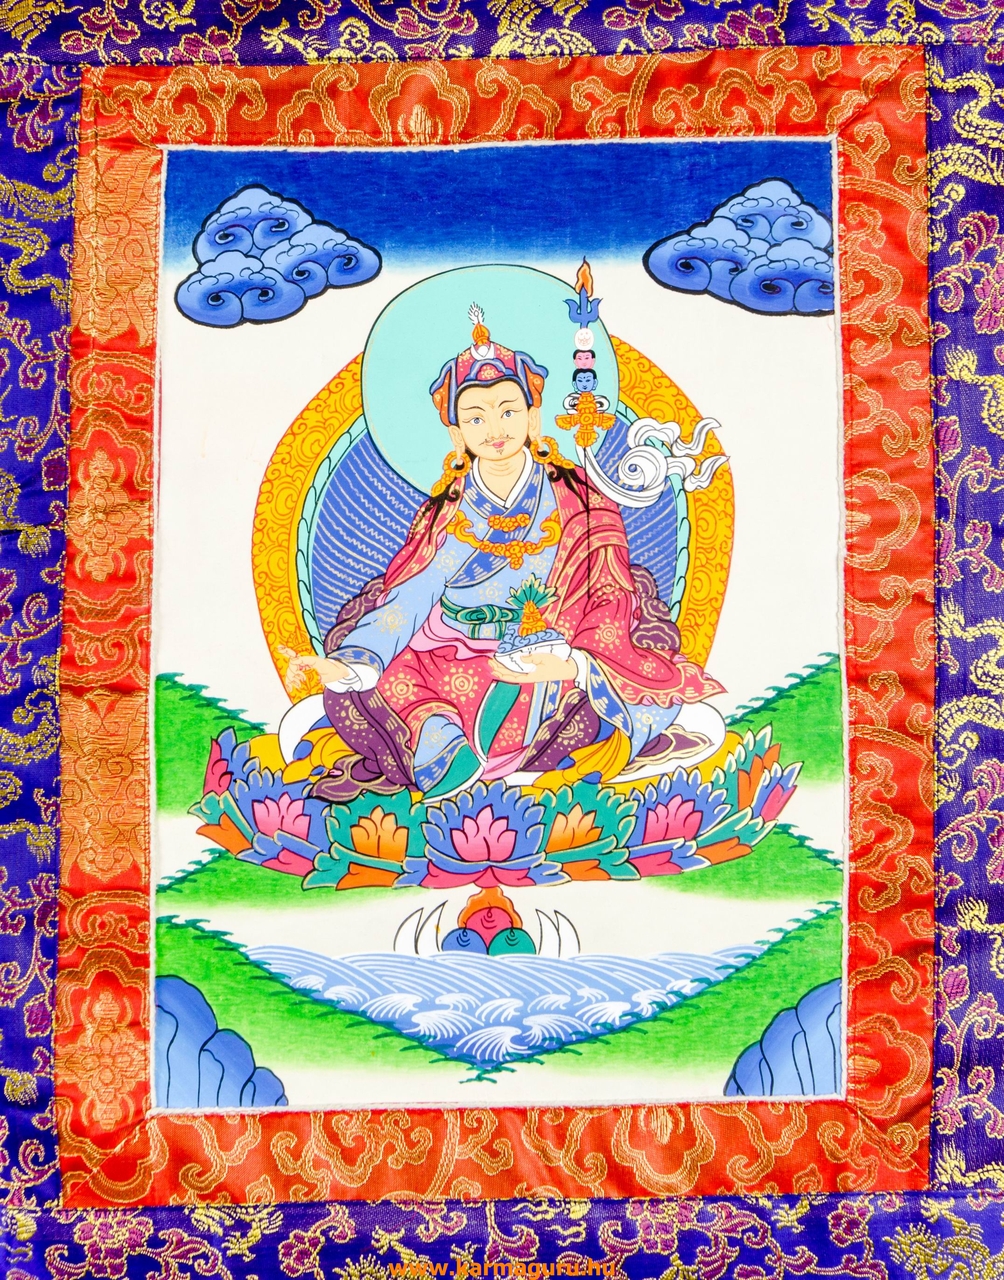 Guru Rinpoche thanka